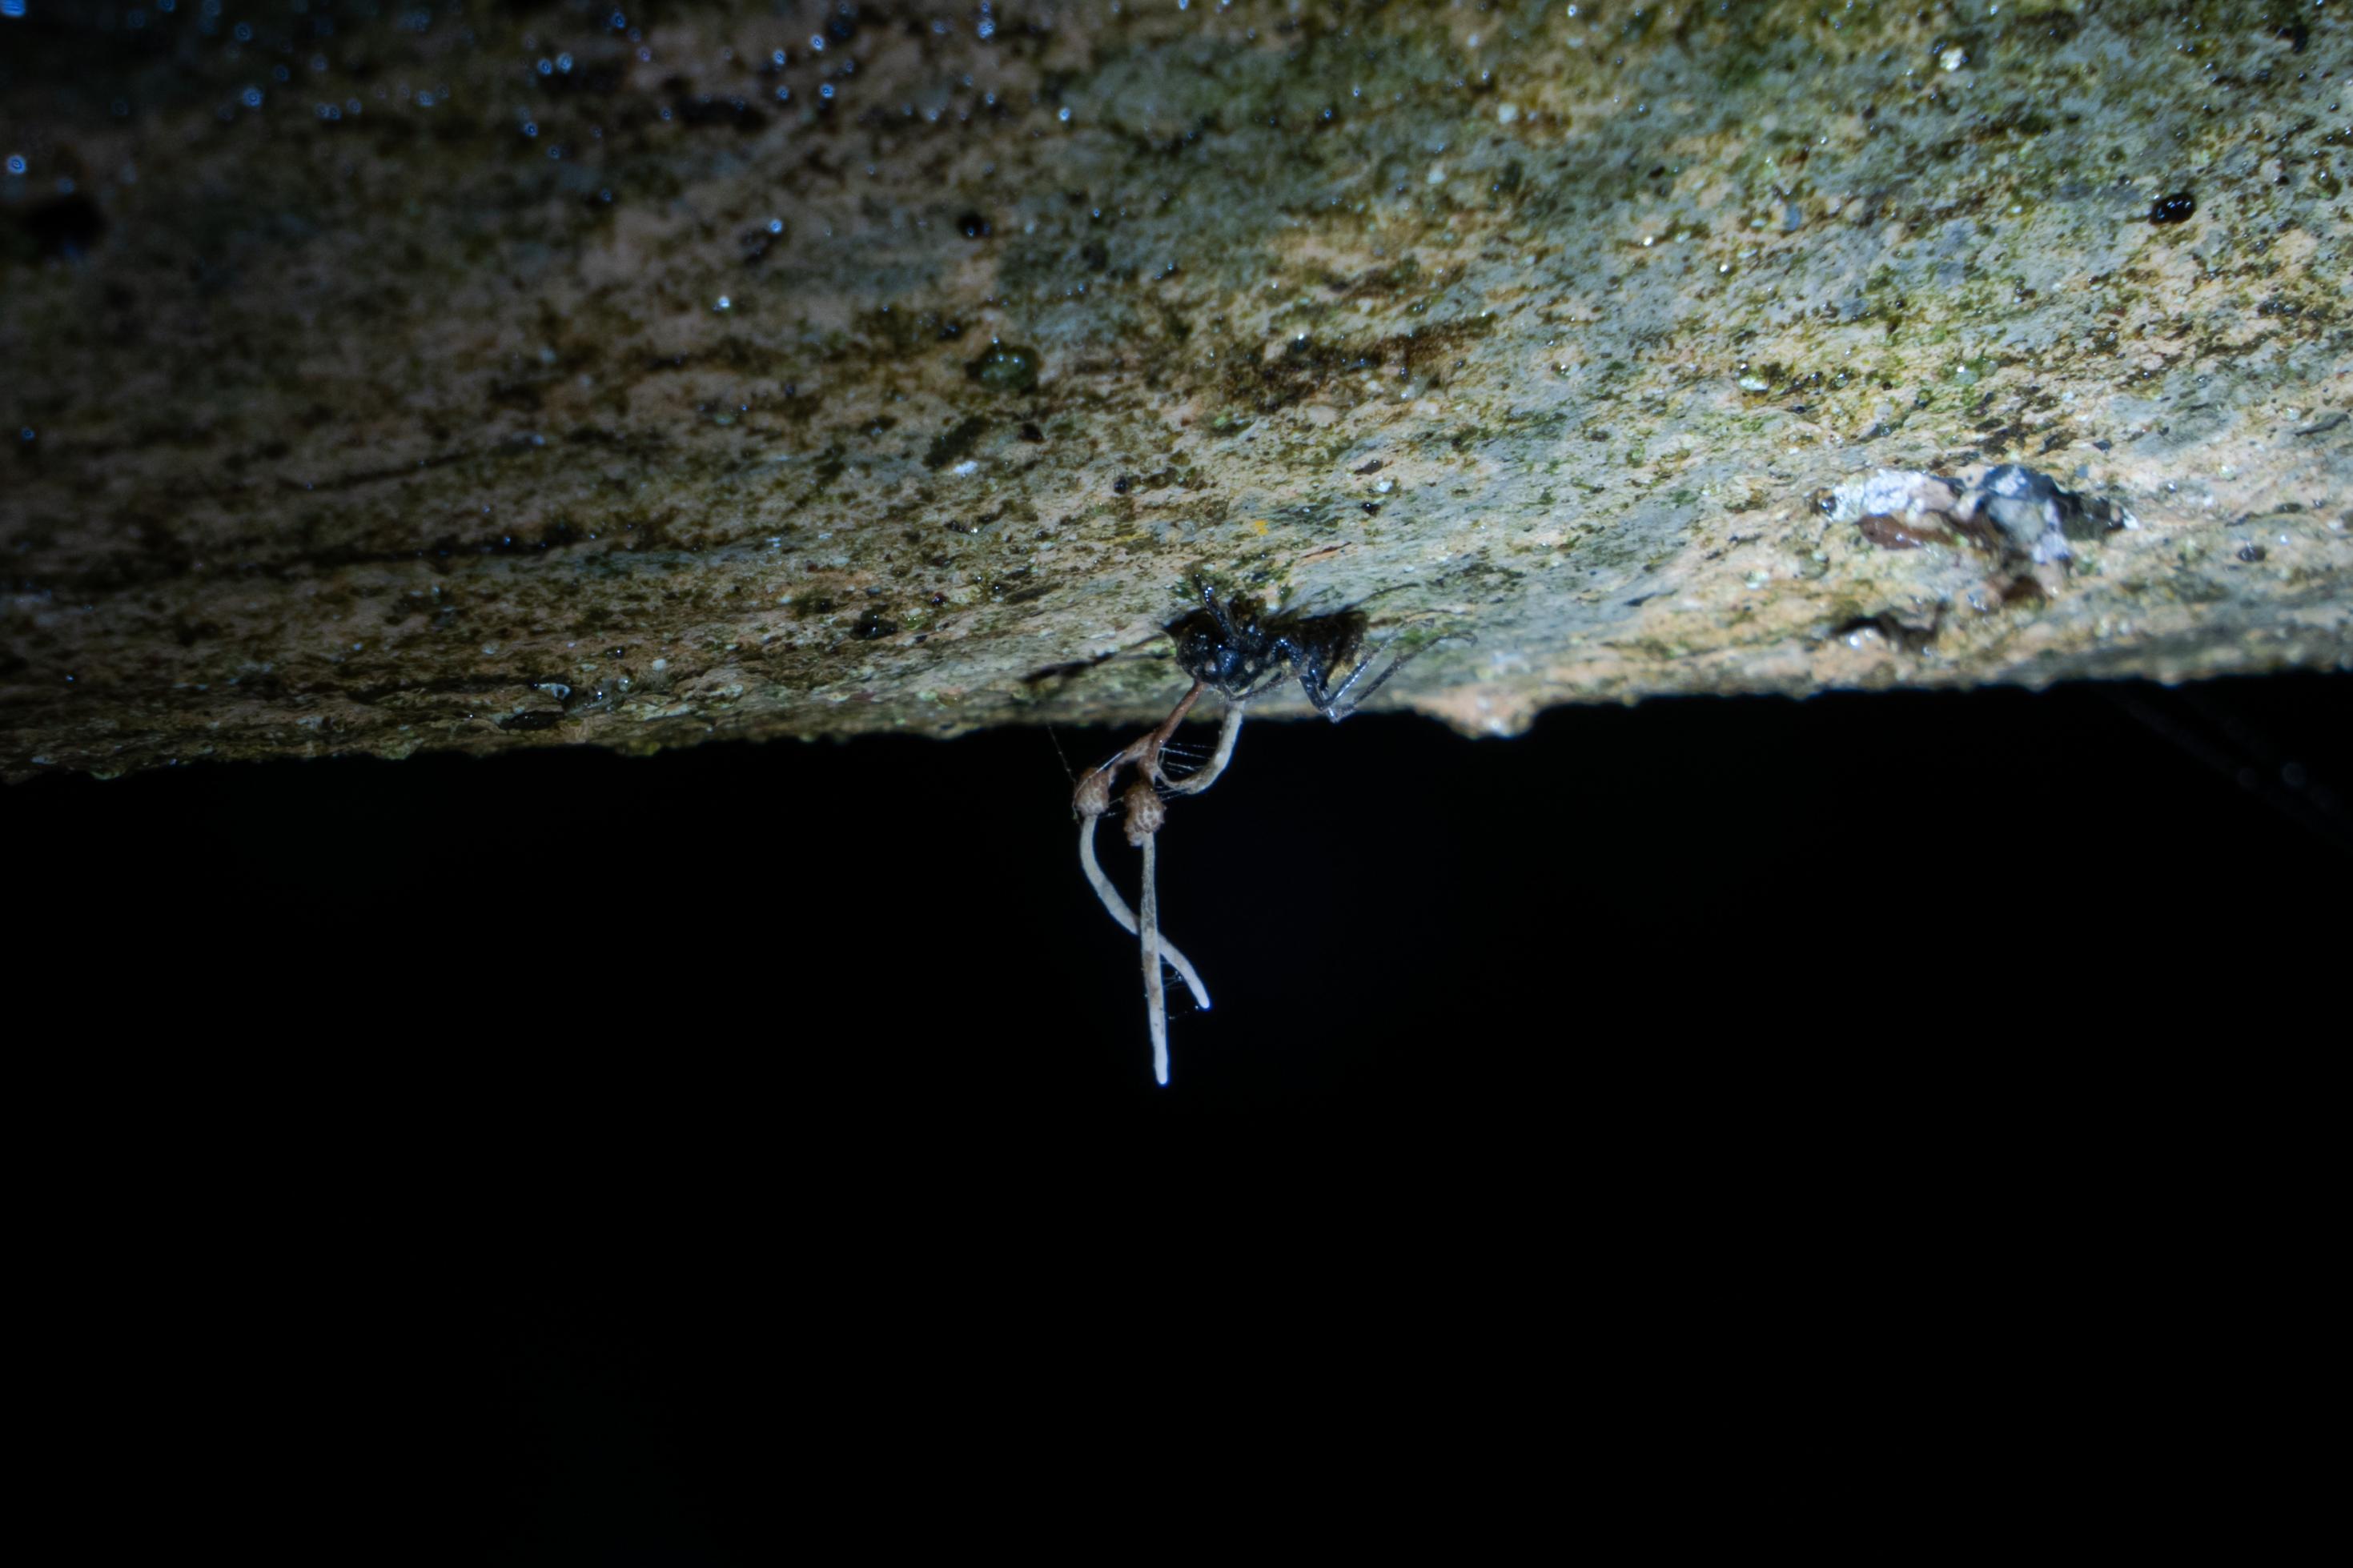 Foto einer toten Ameise, die kopfunter von einem Balken hängt. Aus ihrem Körper wachsen zwei langgestreckte Fruchtkörper des Pilzparasiten Cordyceps.